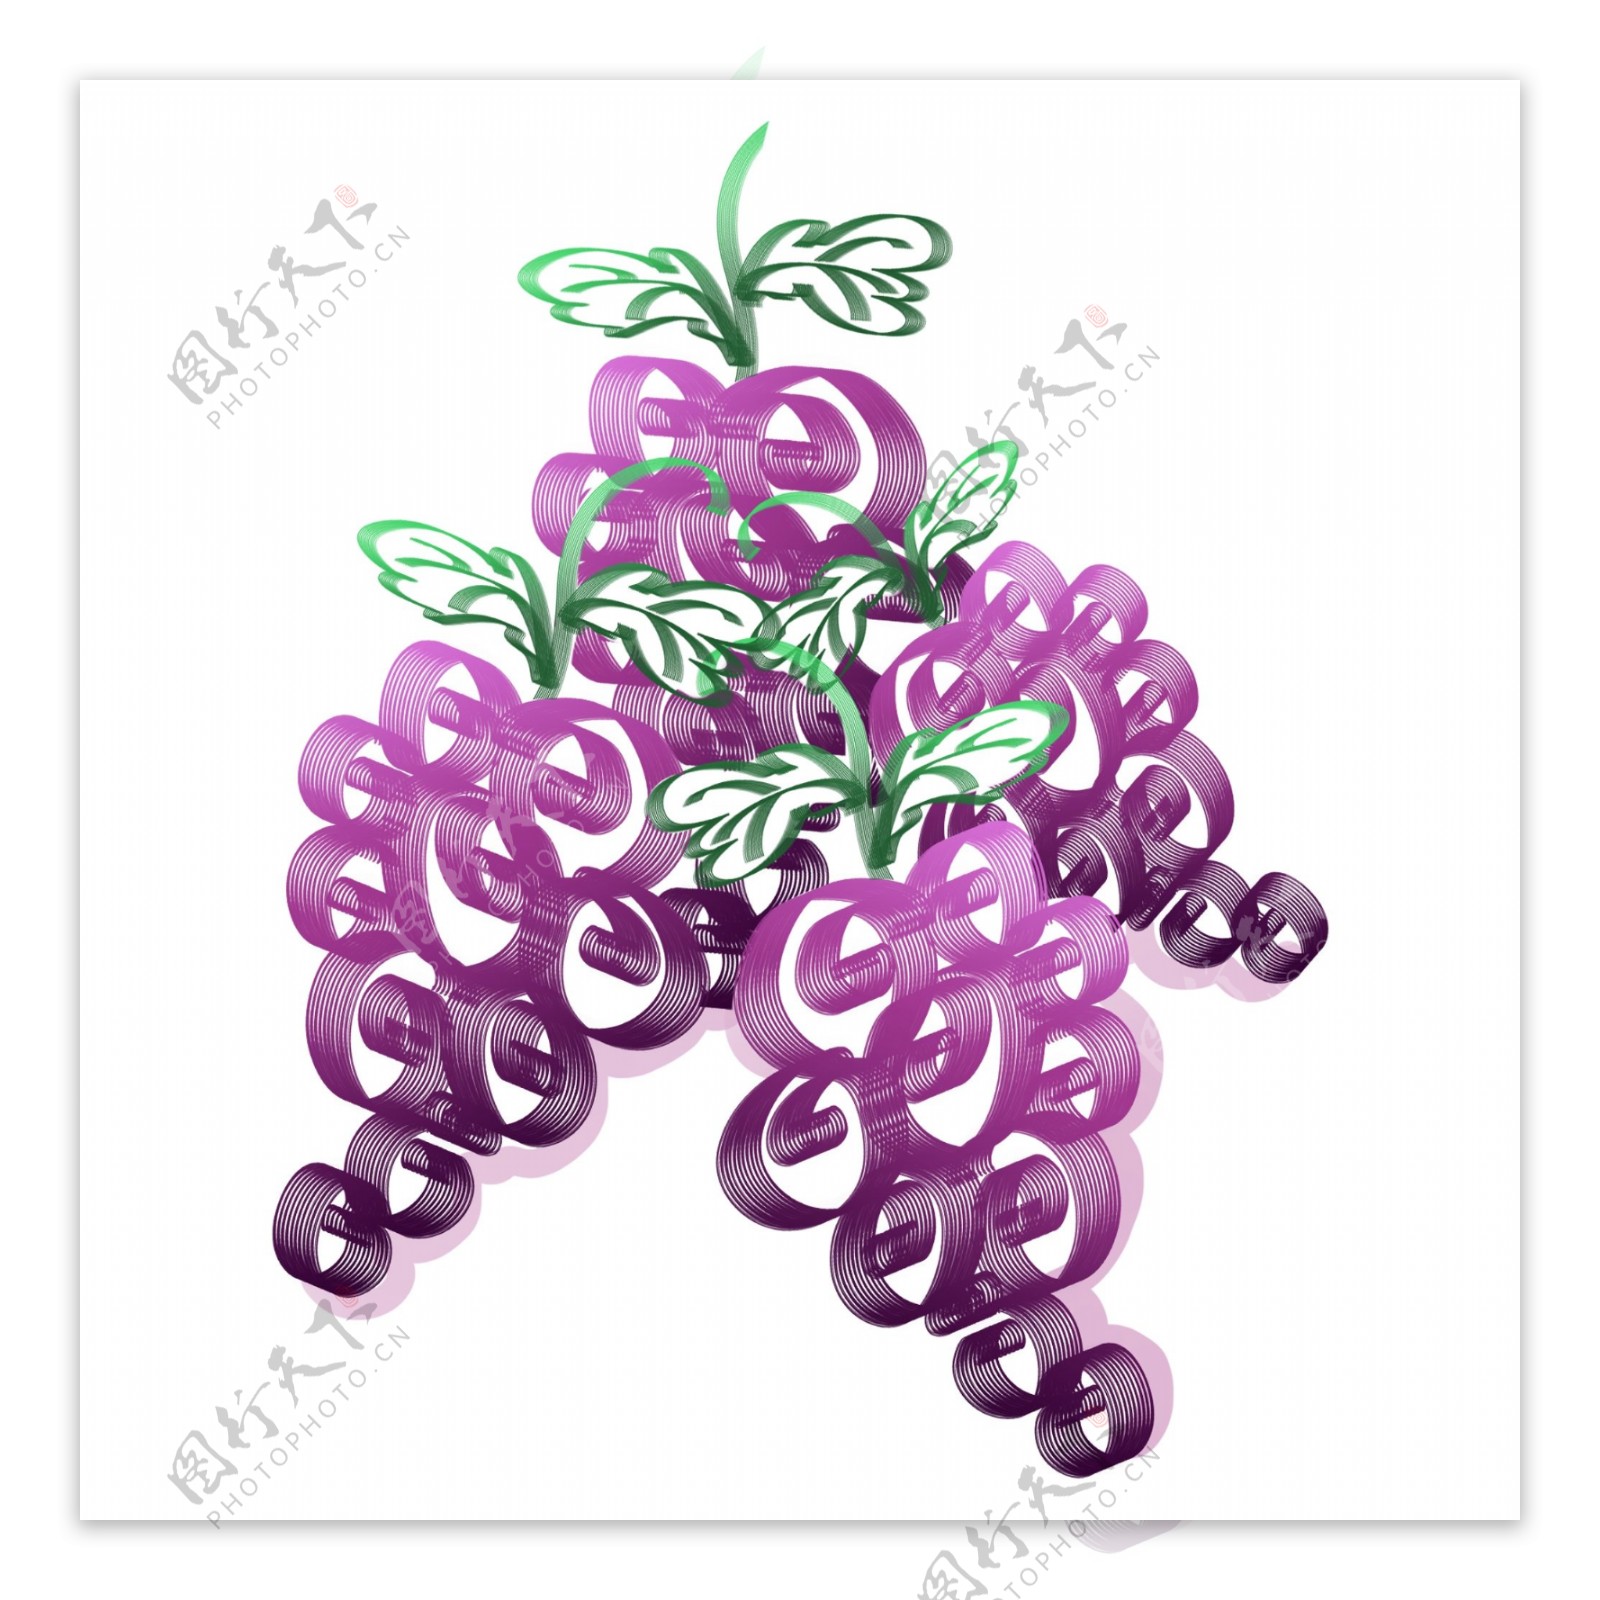 葡萄装饰紫色水果生长